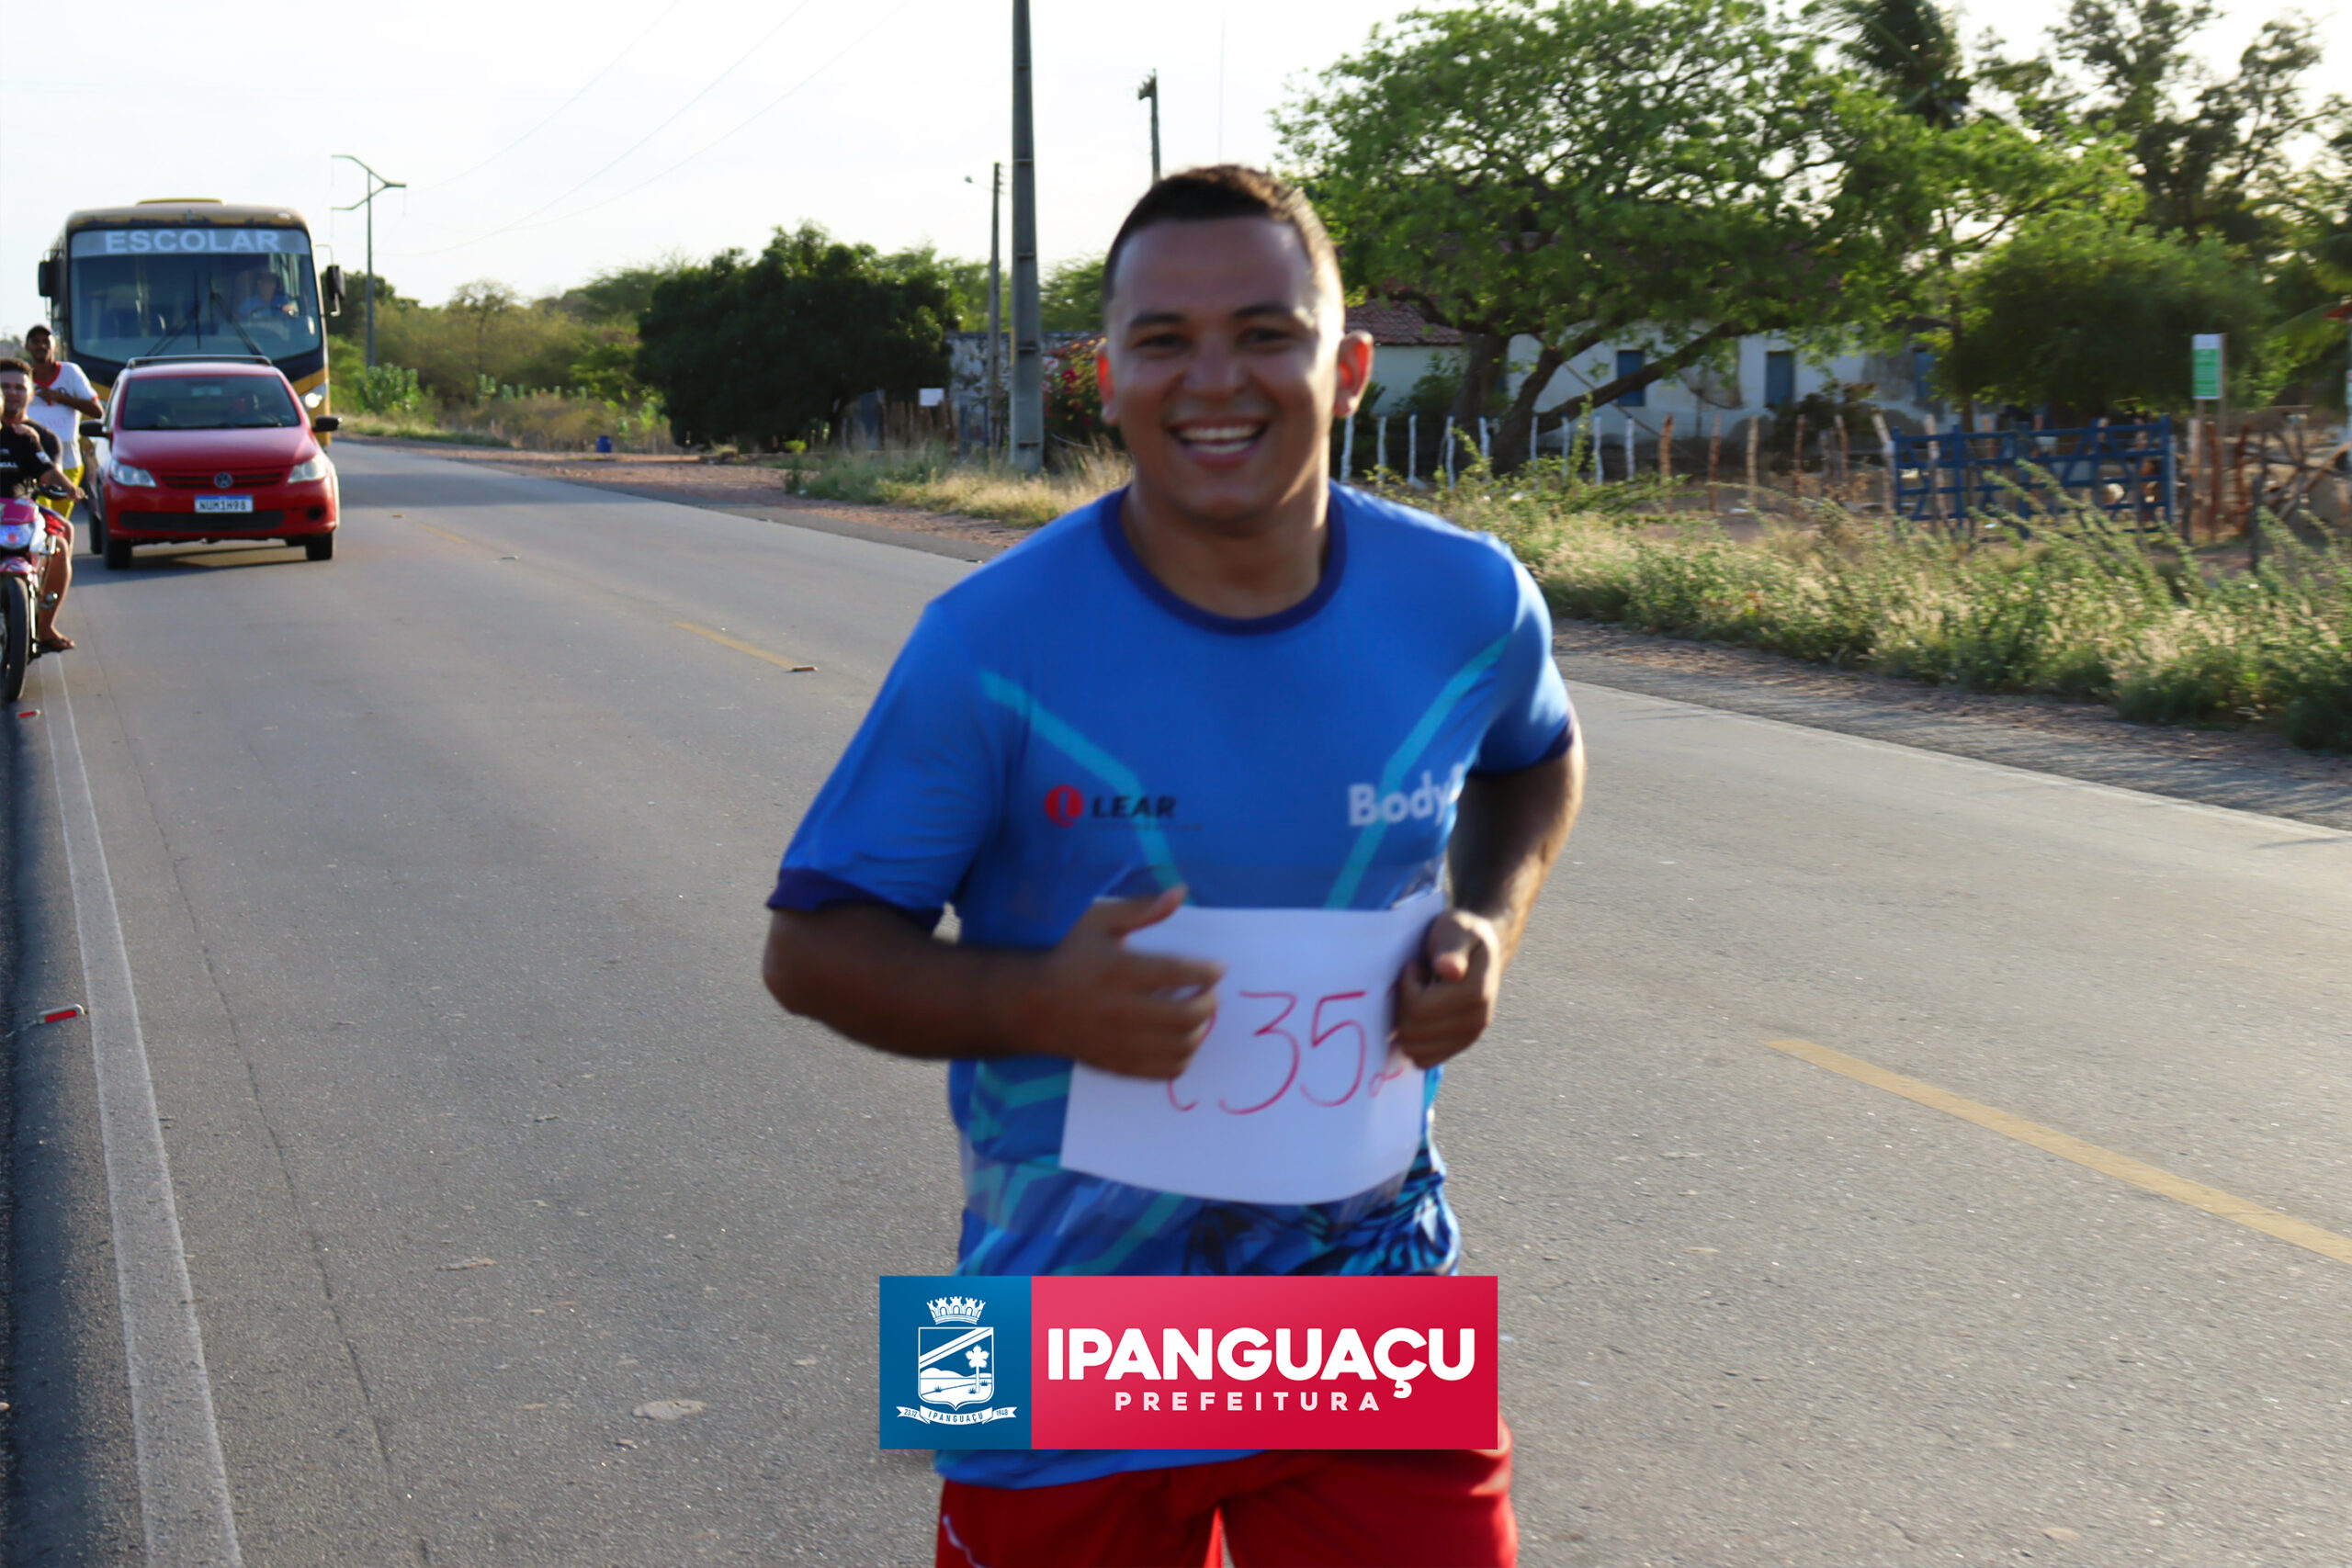 A Prefeitura de Ipanguaçu através da Secretária Municipal da Juventude, Esporte e Lazer, realizaram neste domingo, 18, a 1ª Maratona!